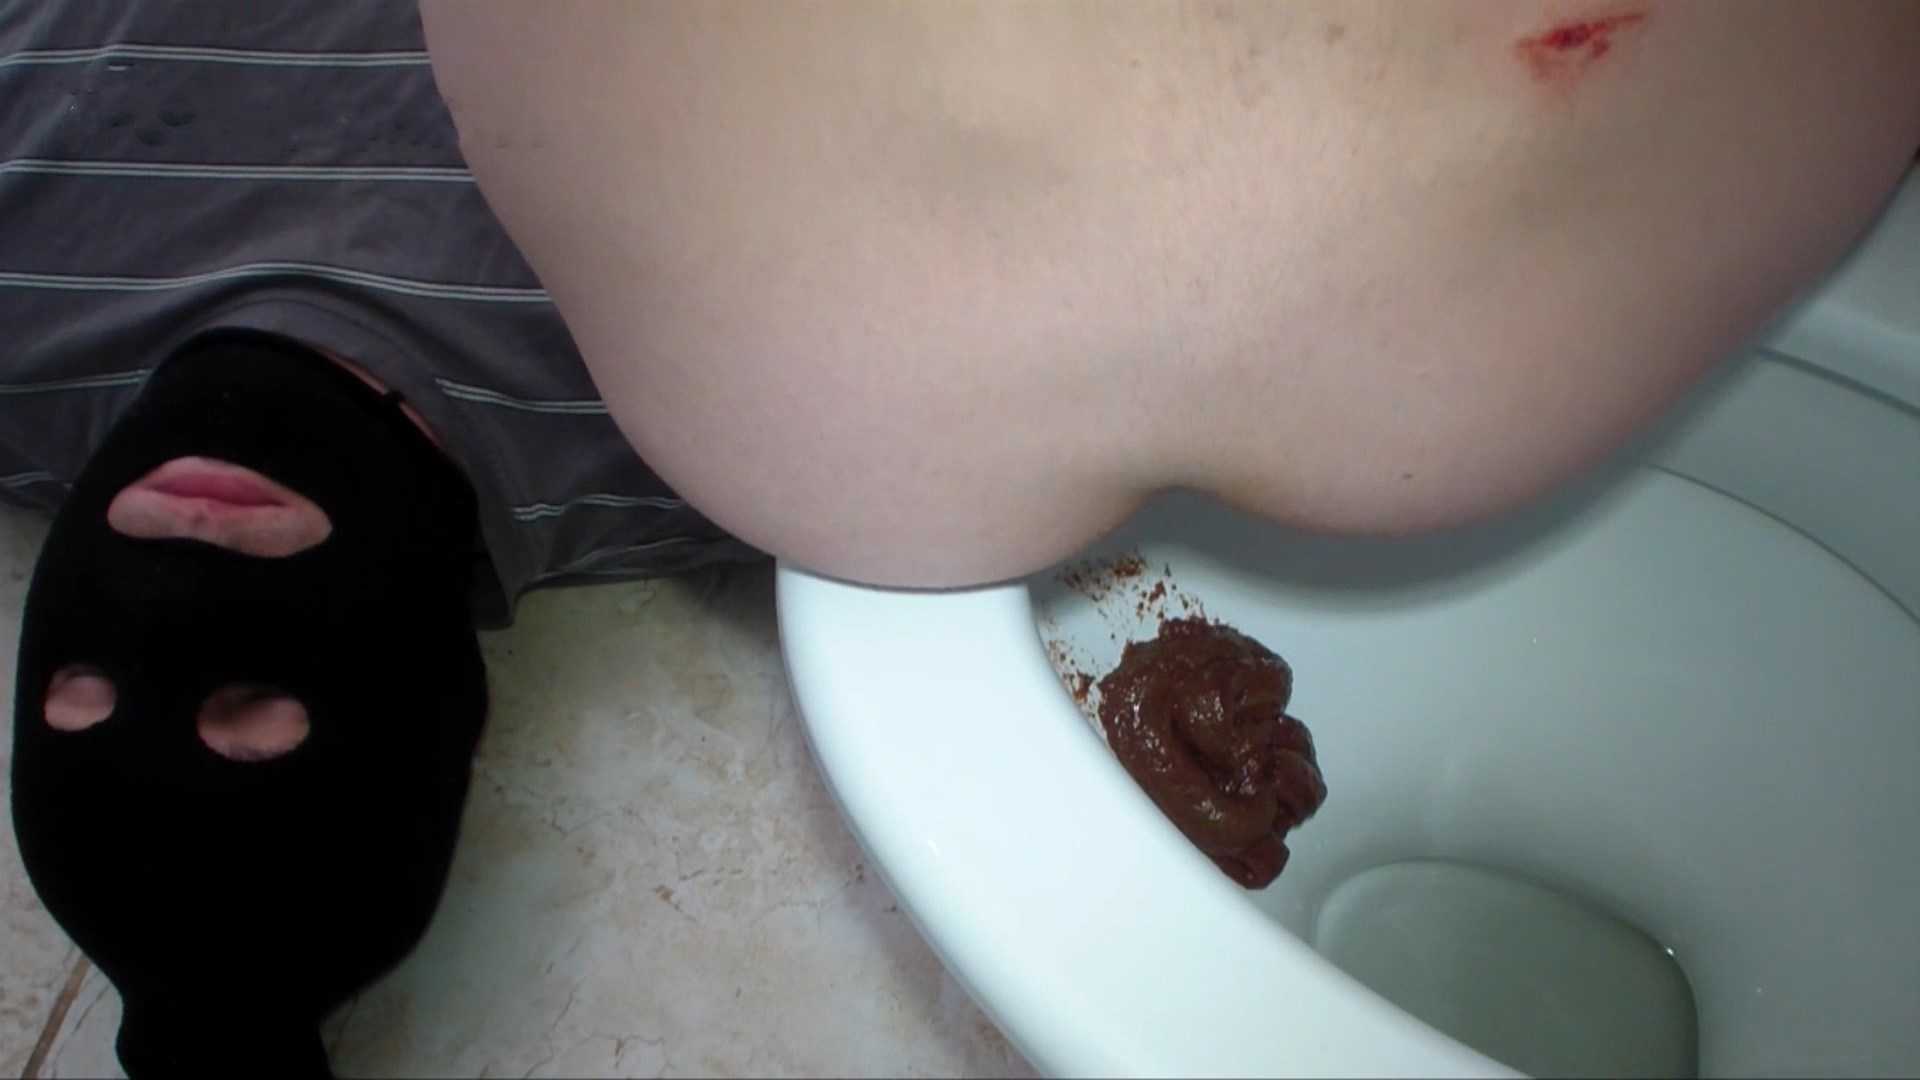 Toilet slave swallows Alina shit | Full HD 1080p | May 24, 2017